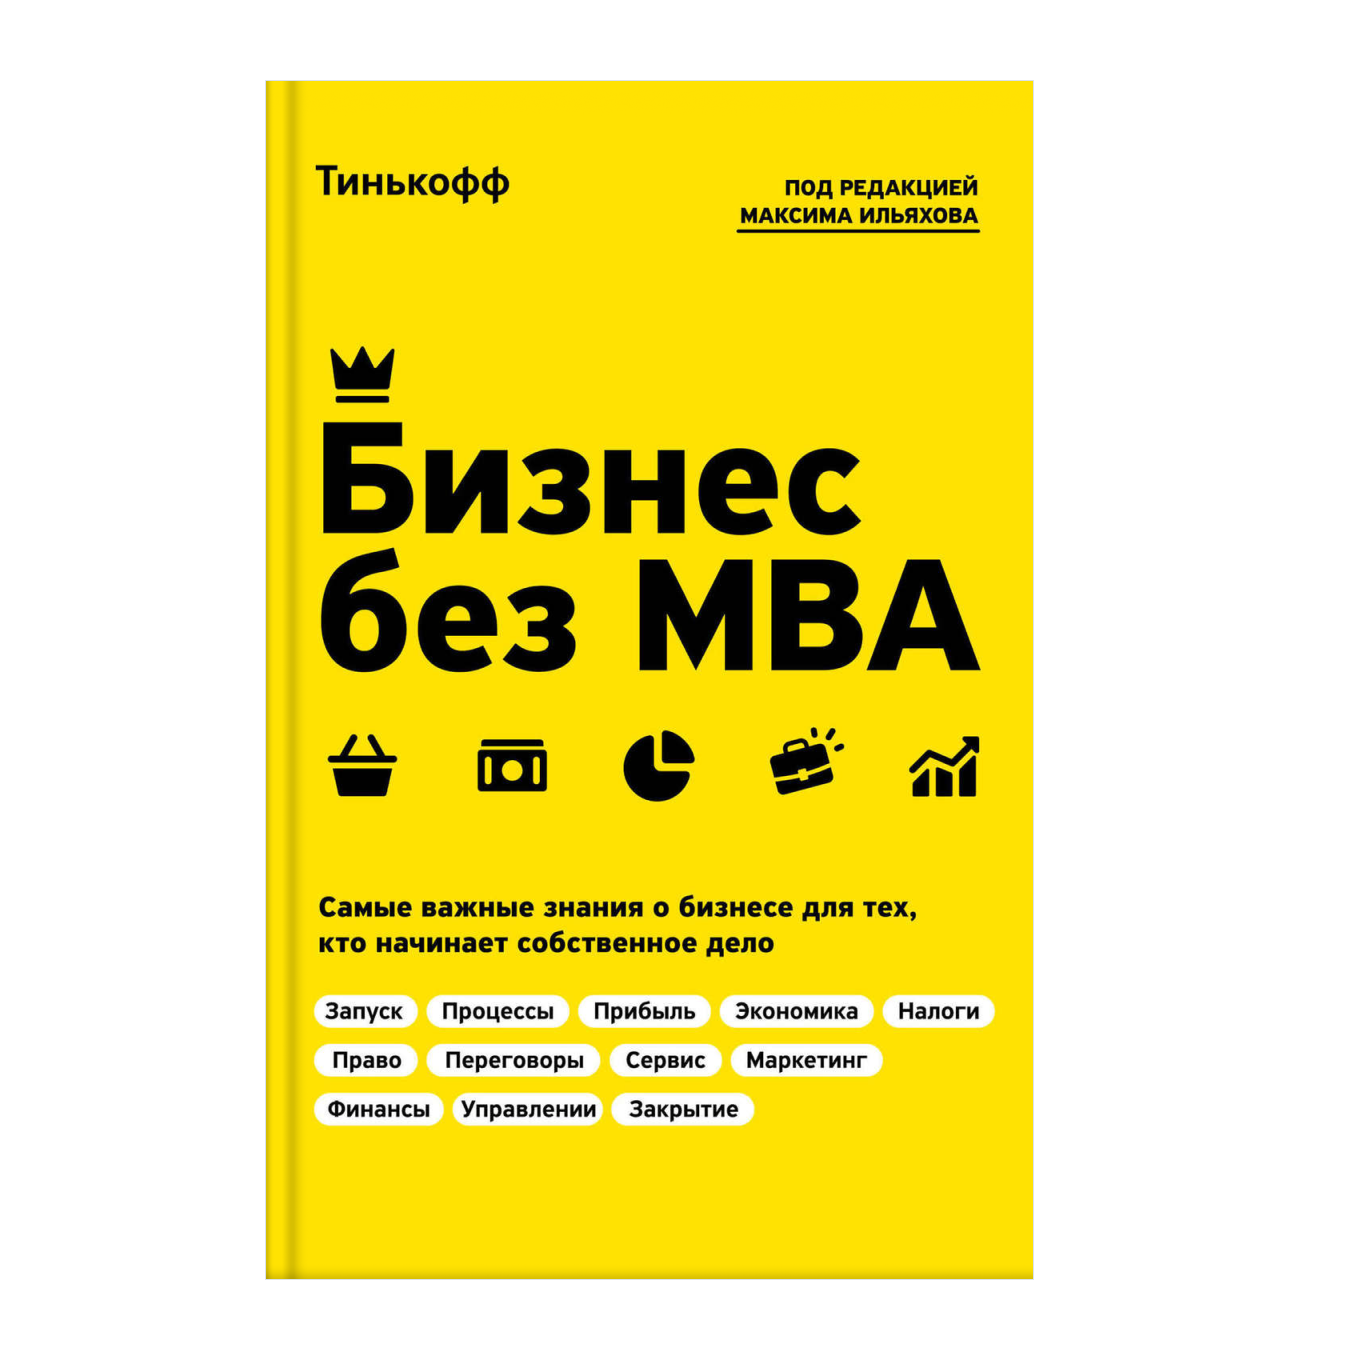 Книга «Бизнес без MBA» от Тинькофф